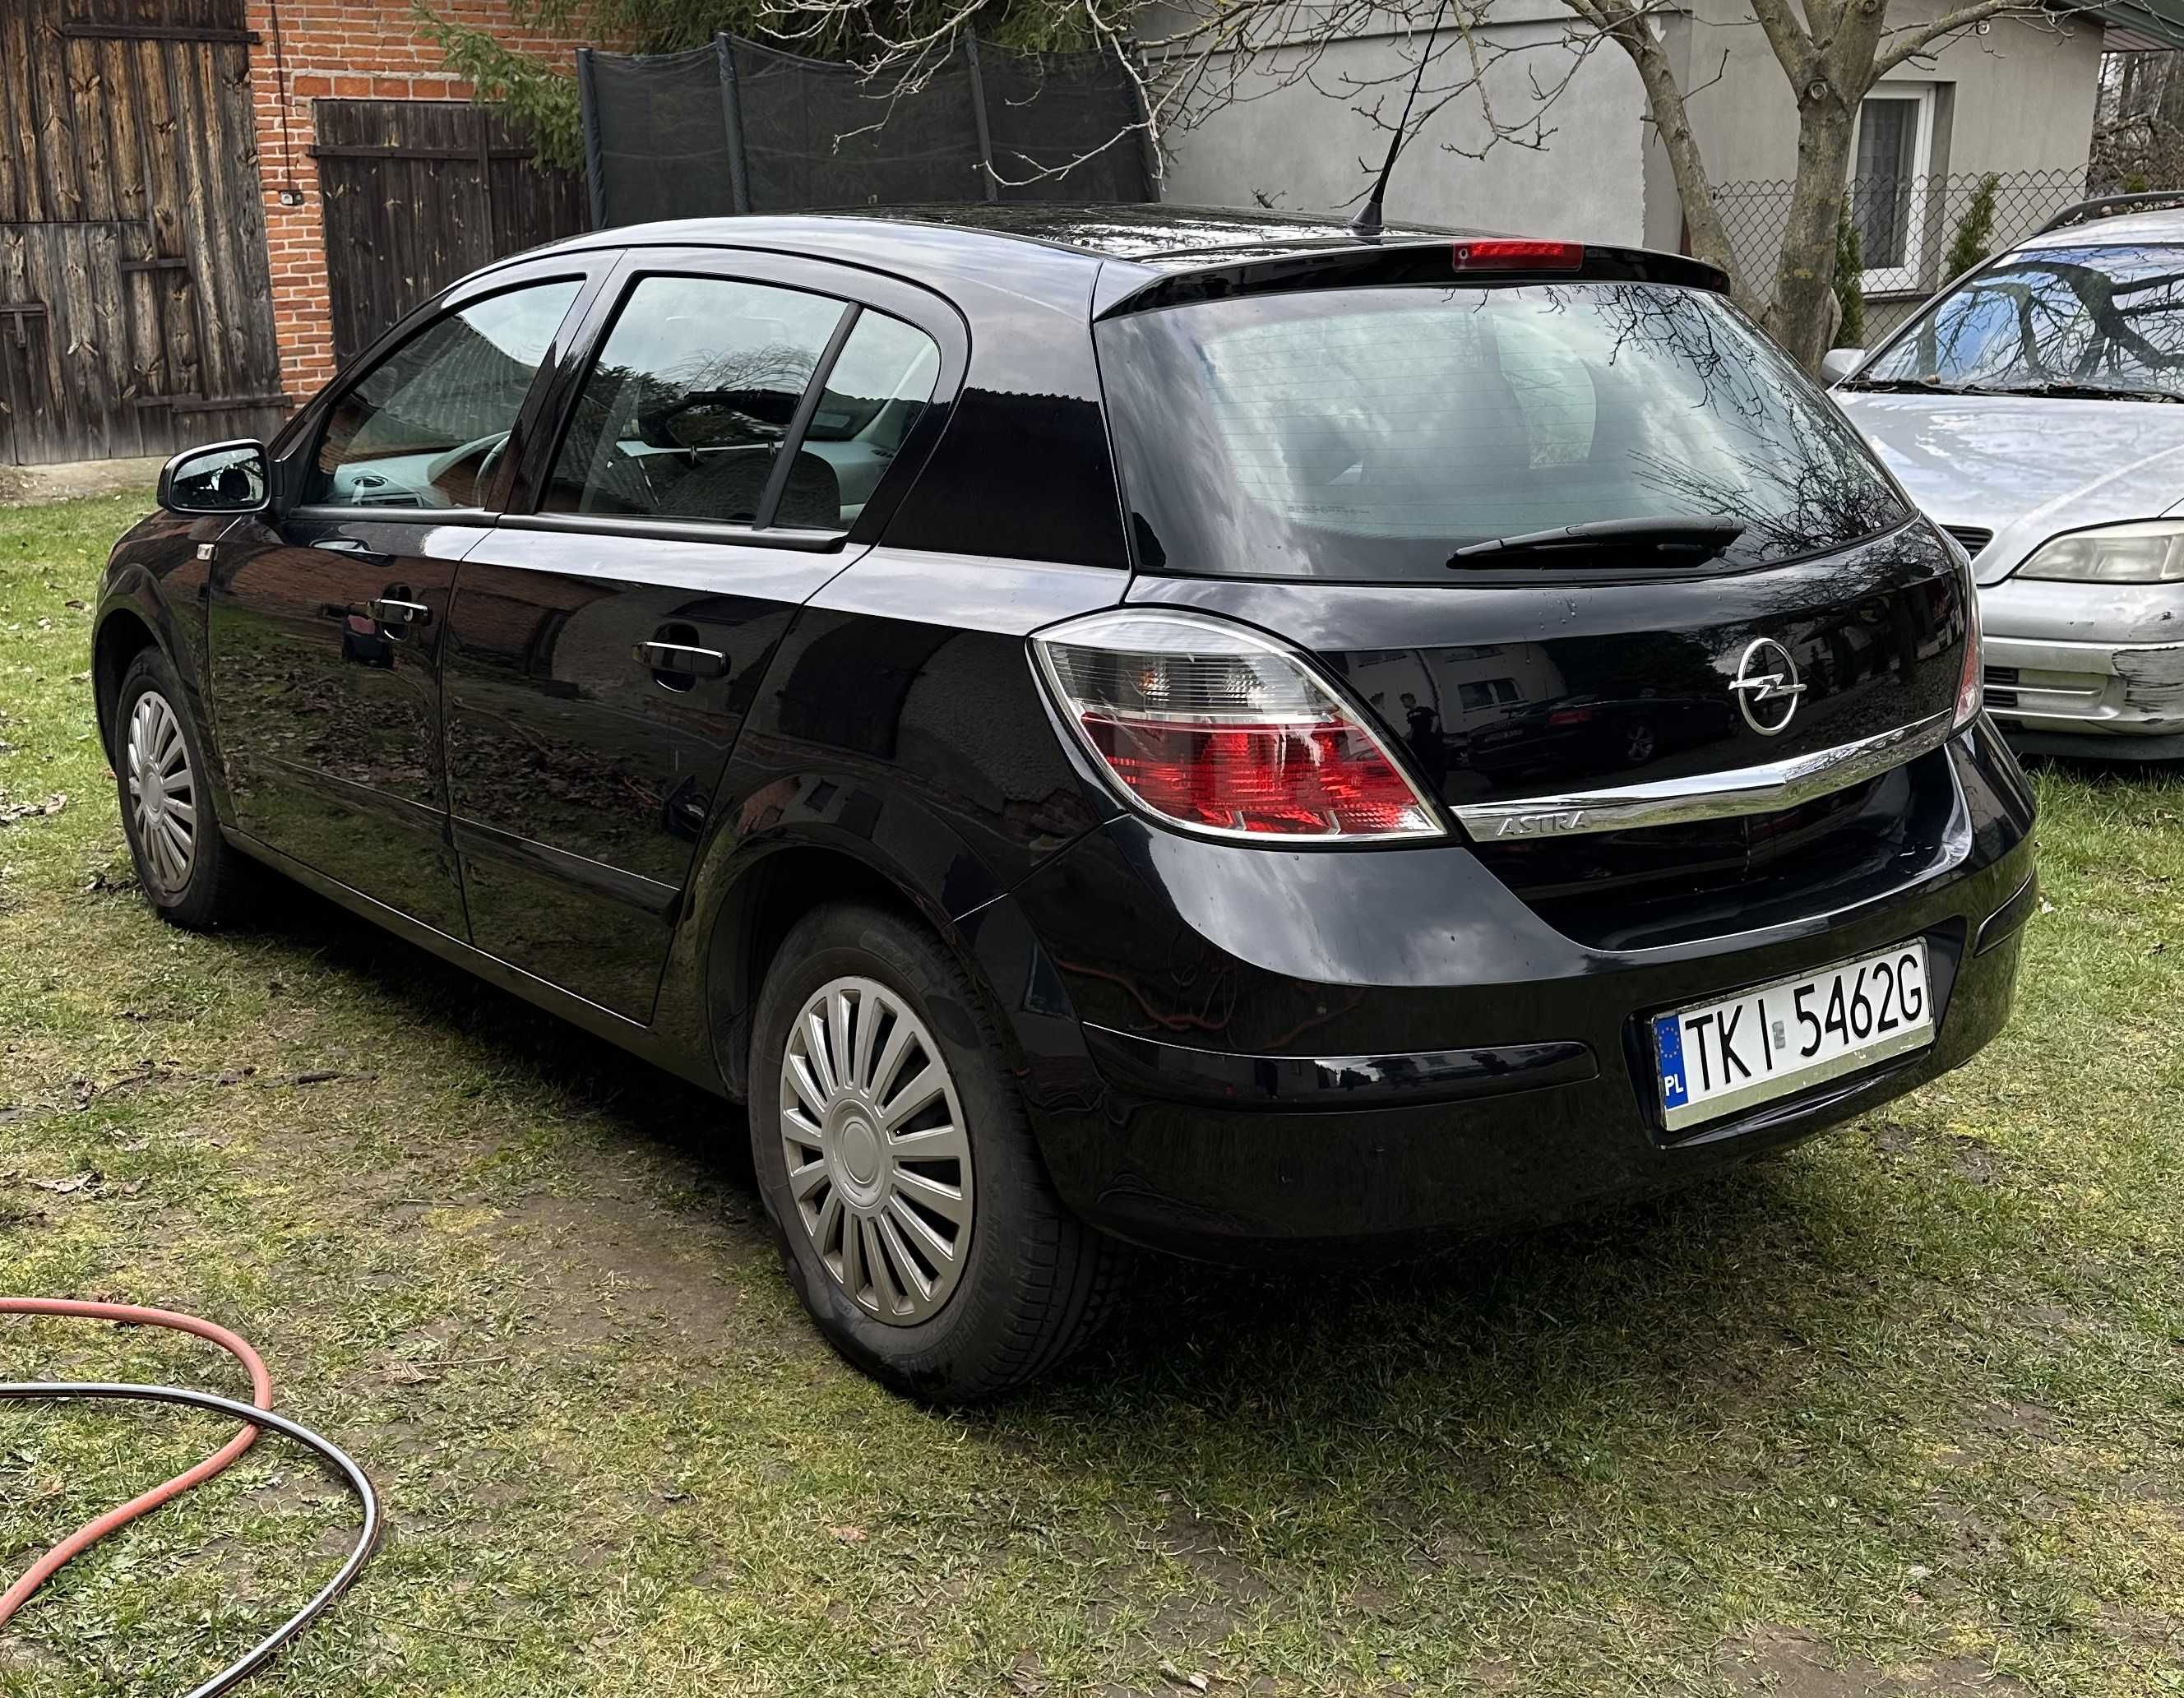 Samochód Opel Astra III H 1.4 2008r. benzyna 90KM czarny